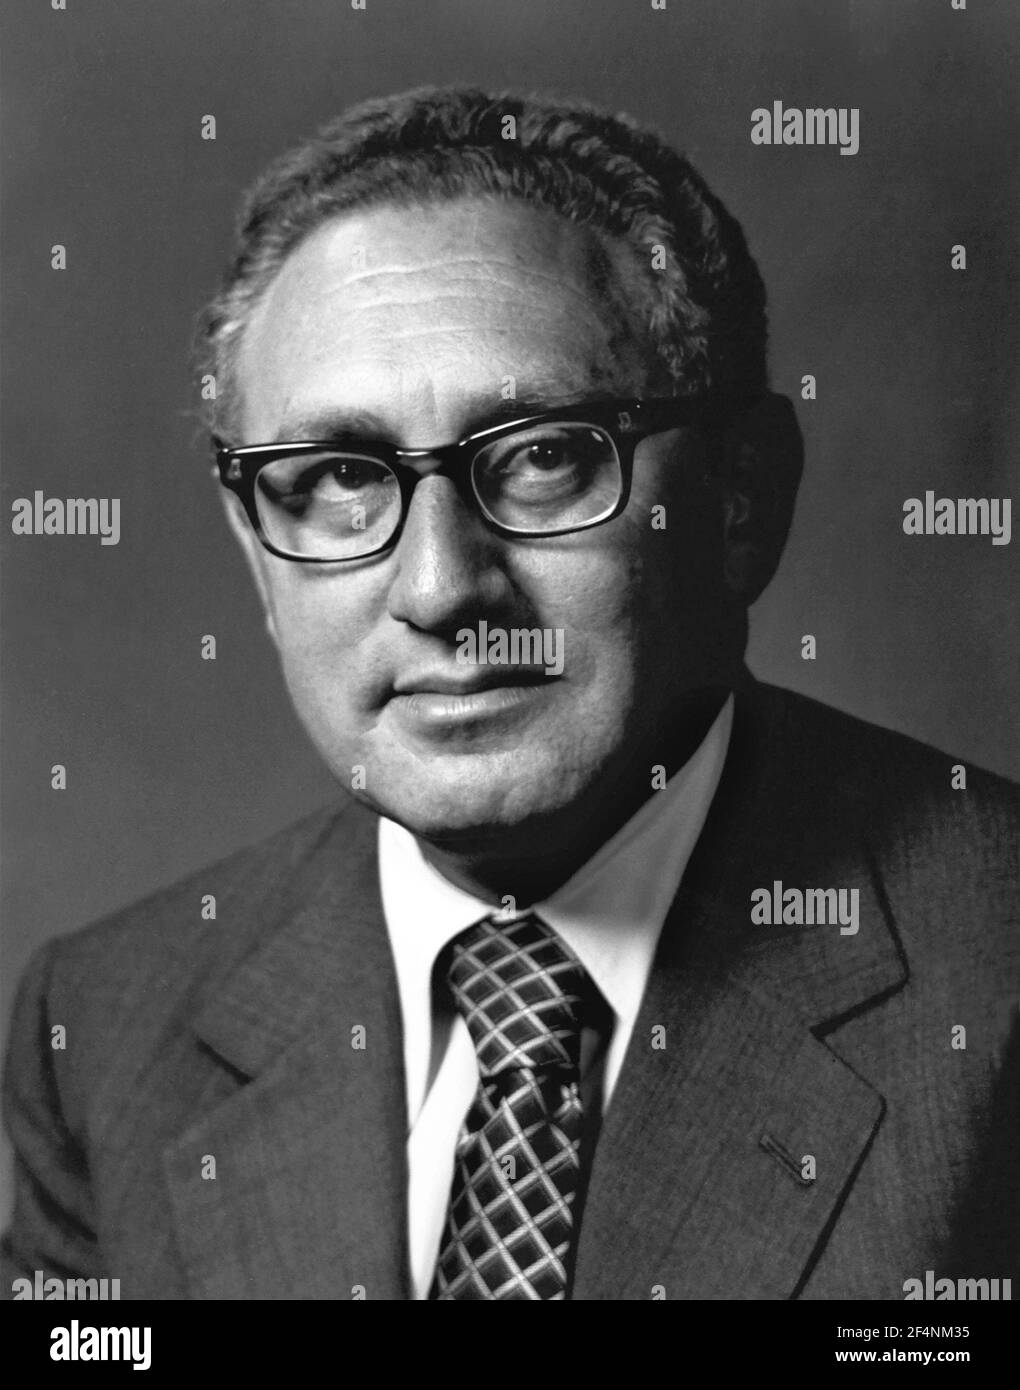 Henry Kissinger. Portrait du secrétaire d'État américain, Henry Alfred Kissinger (n. Heinz Alfred Kissinger, 1923), ch. 1973 Banque D'Images